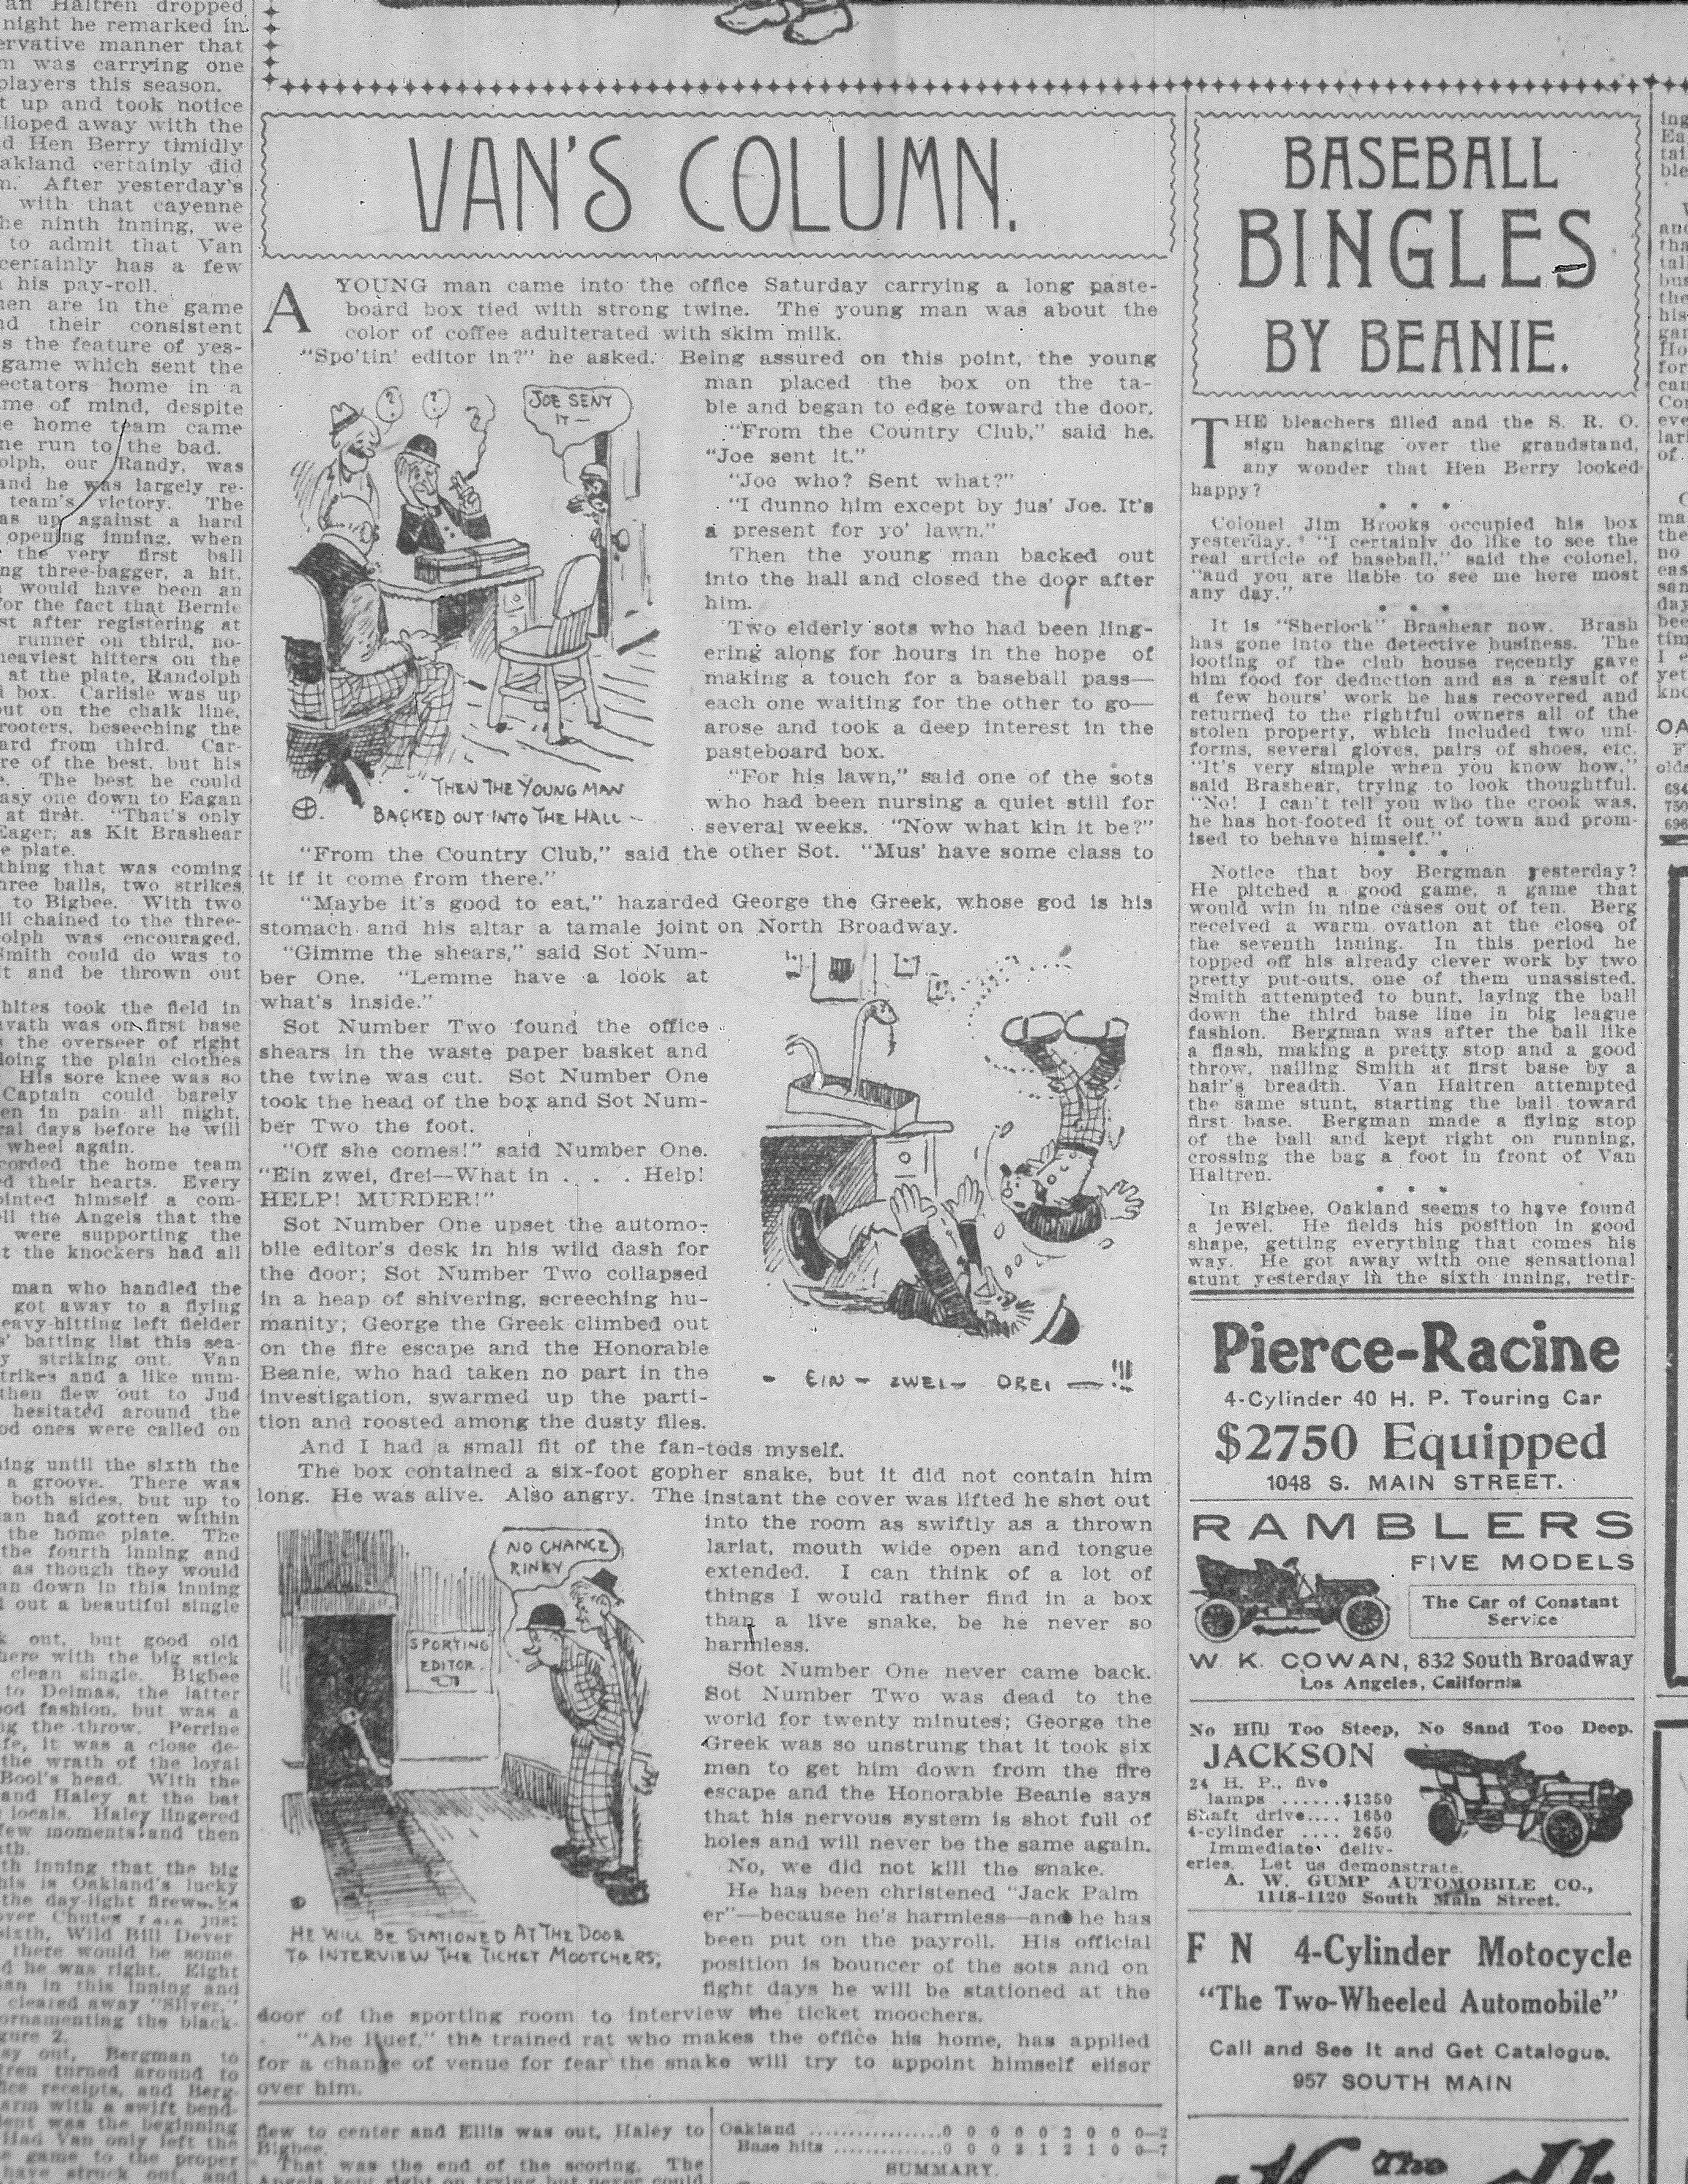 09-1907-04-08-laex-van-loan-story-about-herriman-with-cartoons.jpg